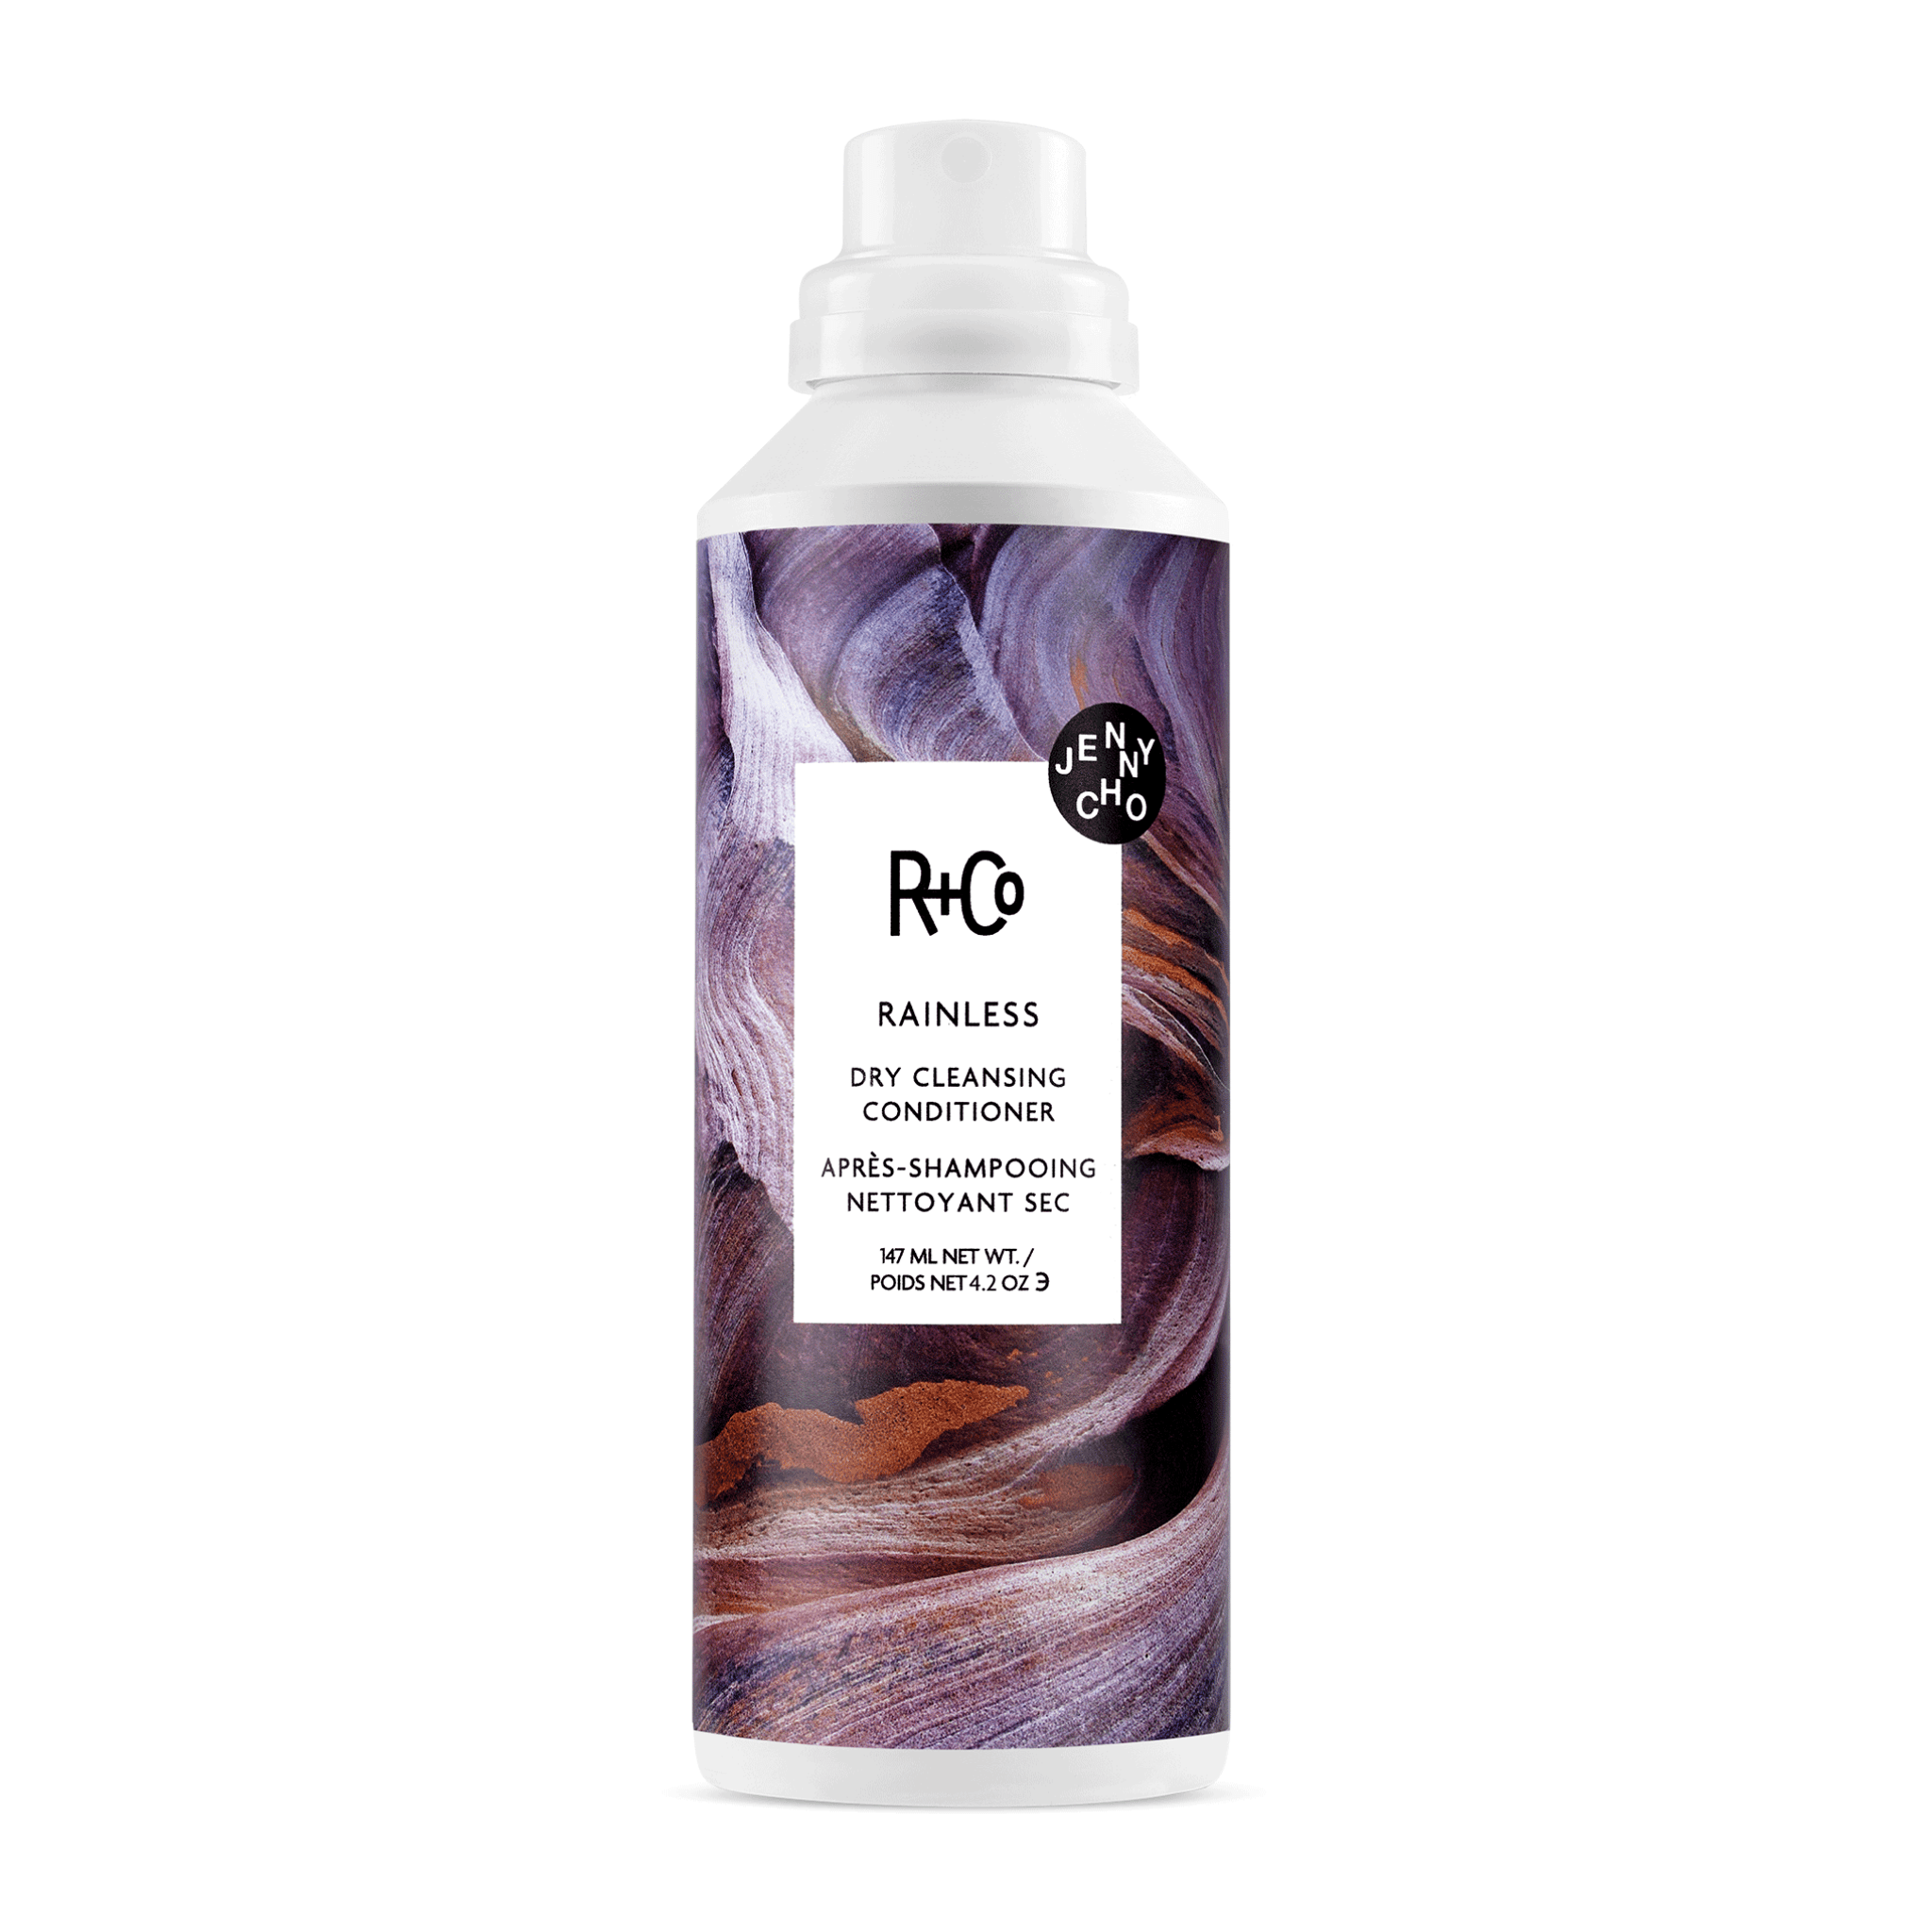 R+Co. Rainless Revitalisant Nettoyant Sec - 147 ml - Concept C. Shop